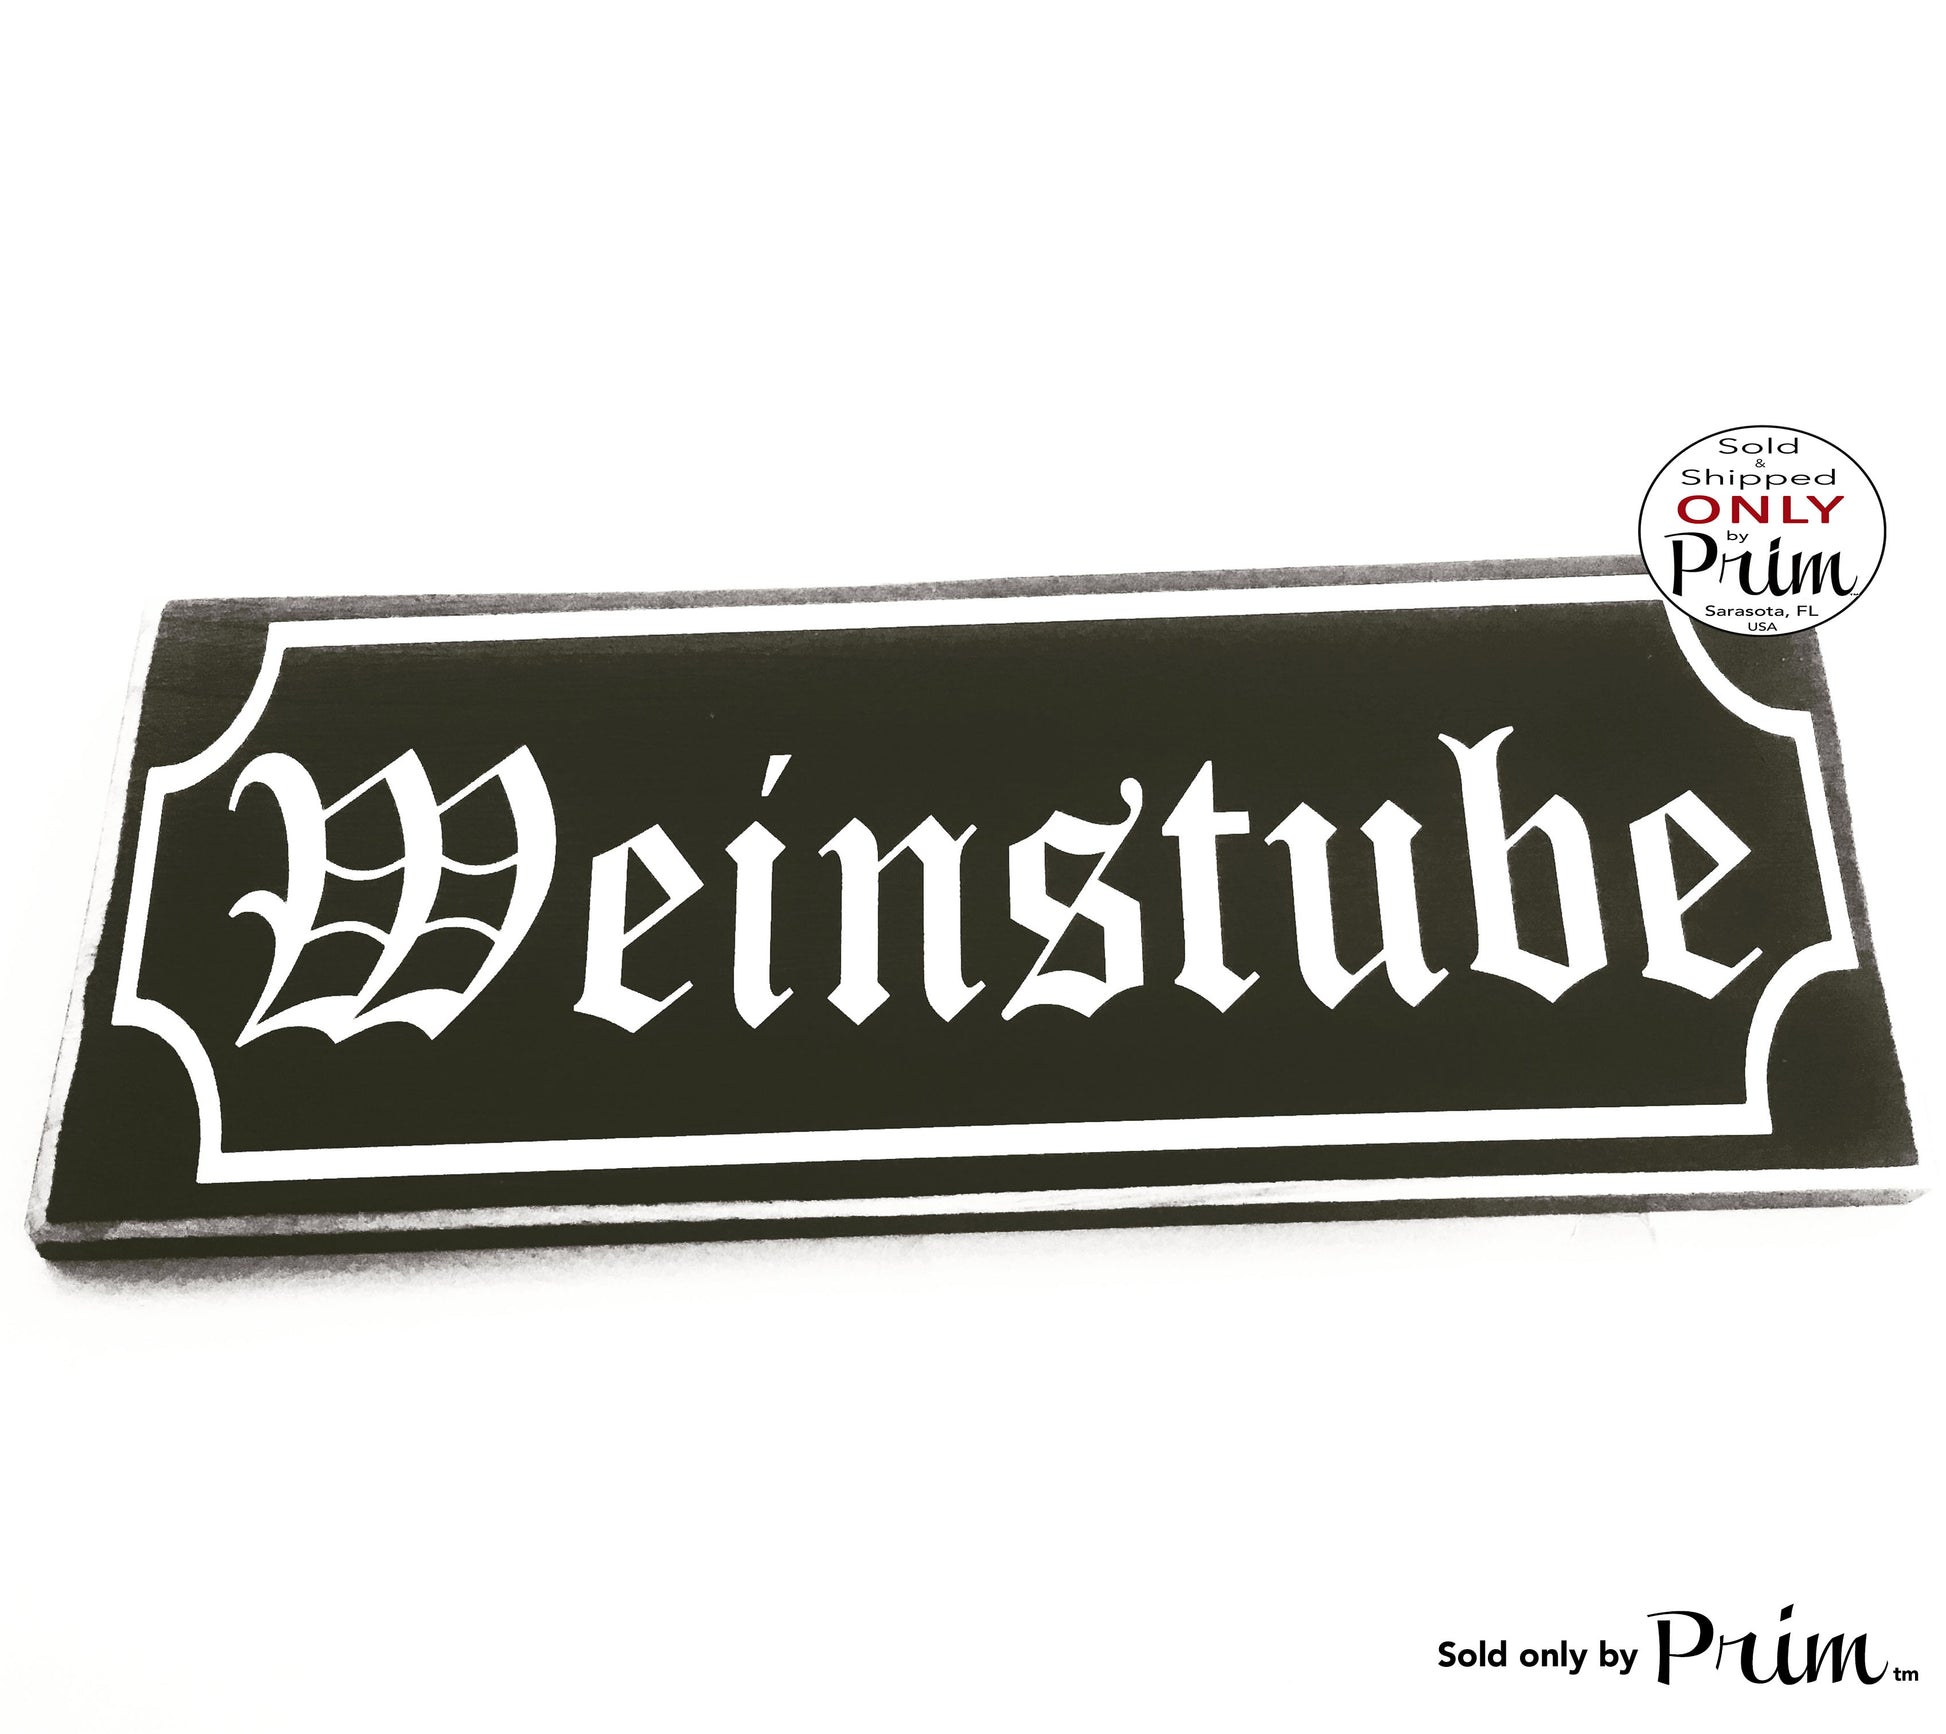 14x6 Weinstube Custom Wood Sign | Wine Bar Biergarten German Hanger Willkommen Oktoberfest Home Deutschland Bavarian Garden Wall Plaque Designs by Prim